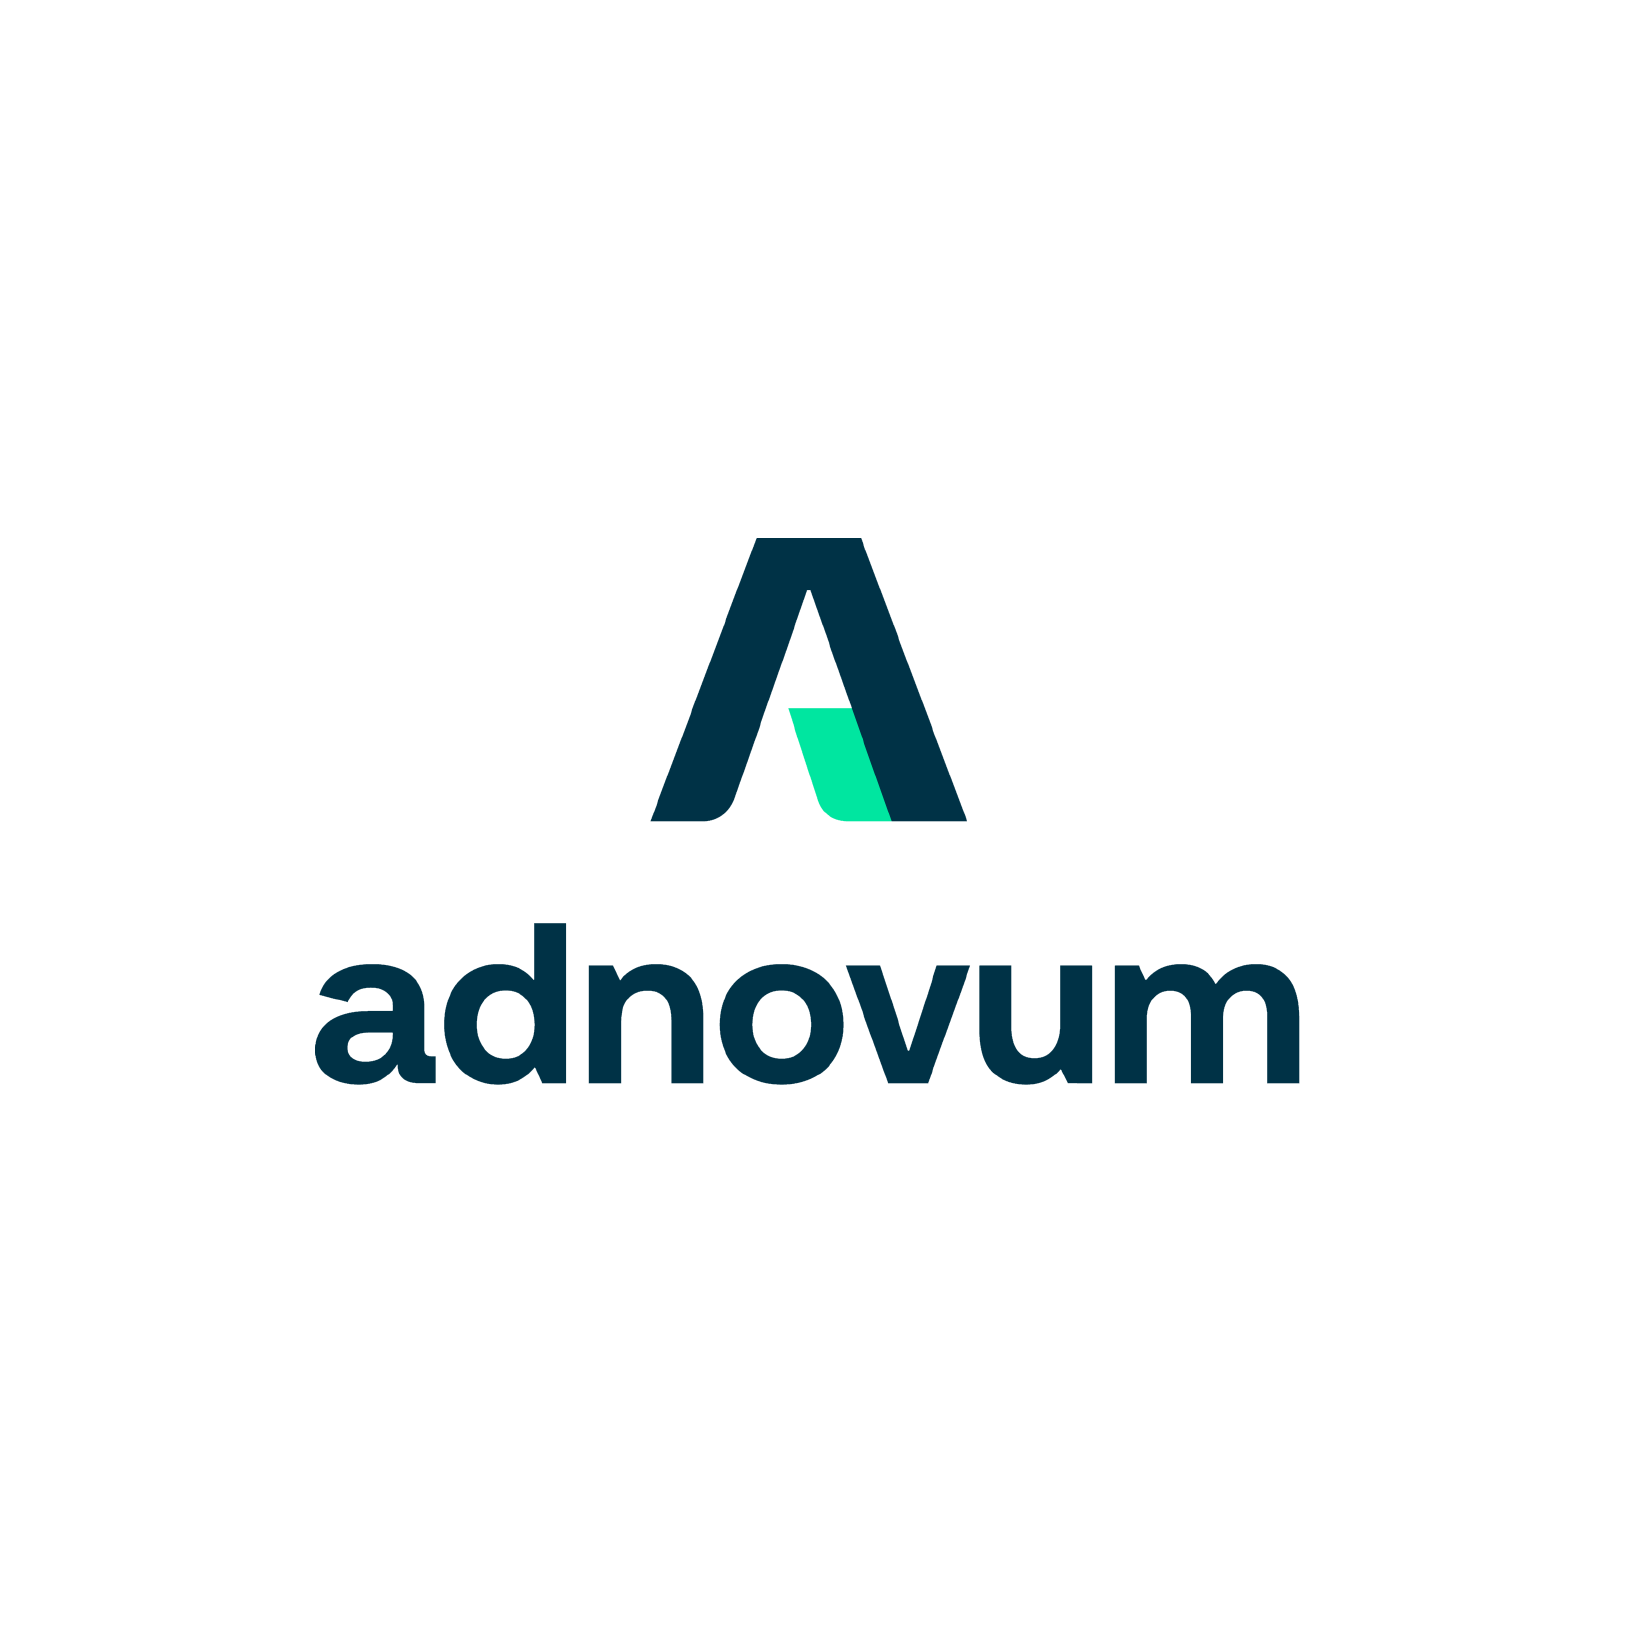 adnovum